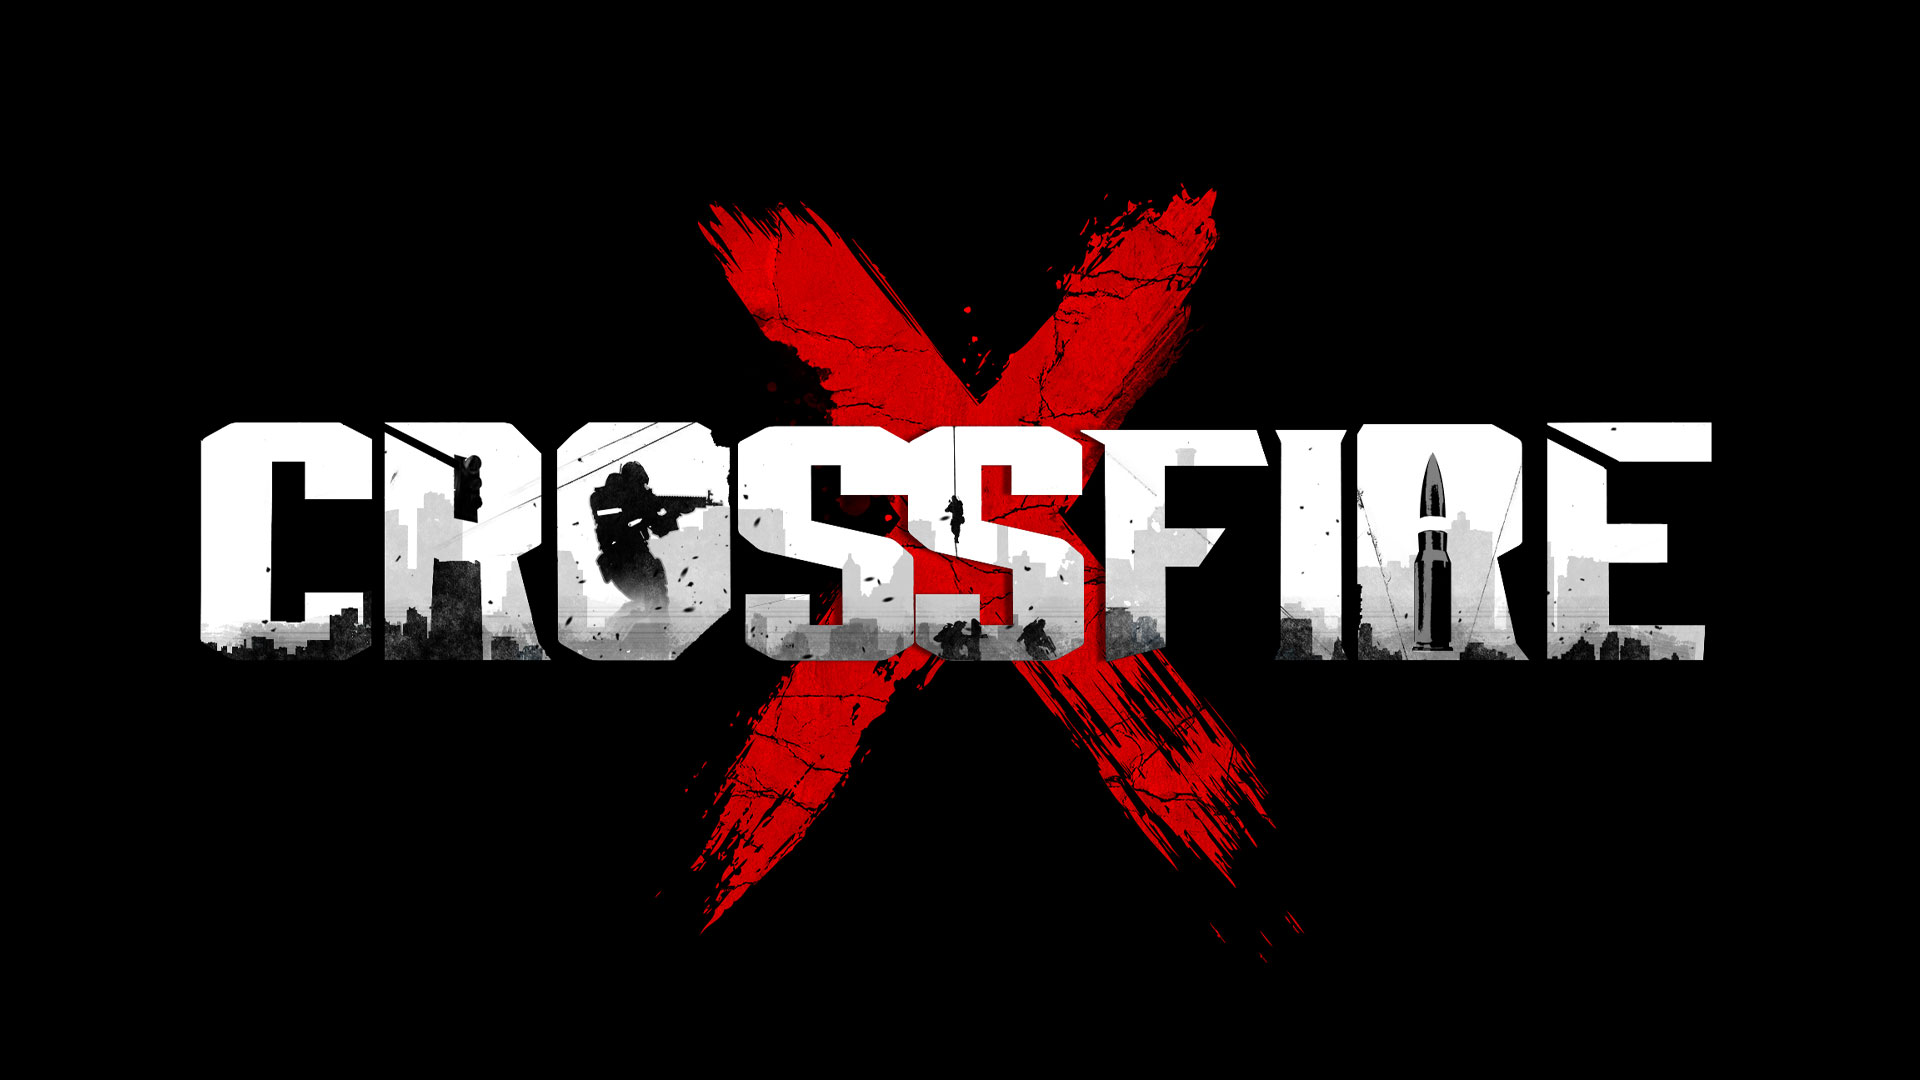 crossfirex vs crossfire